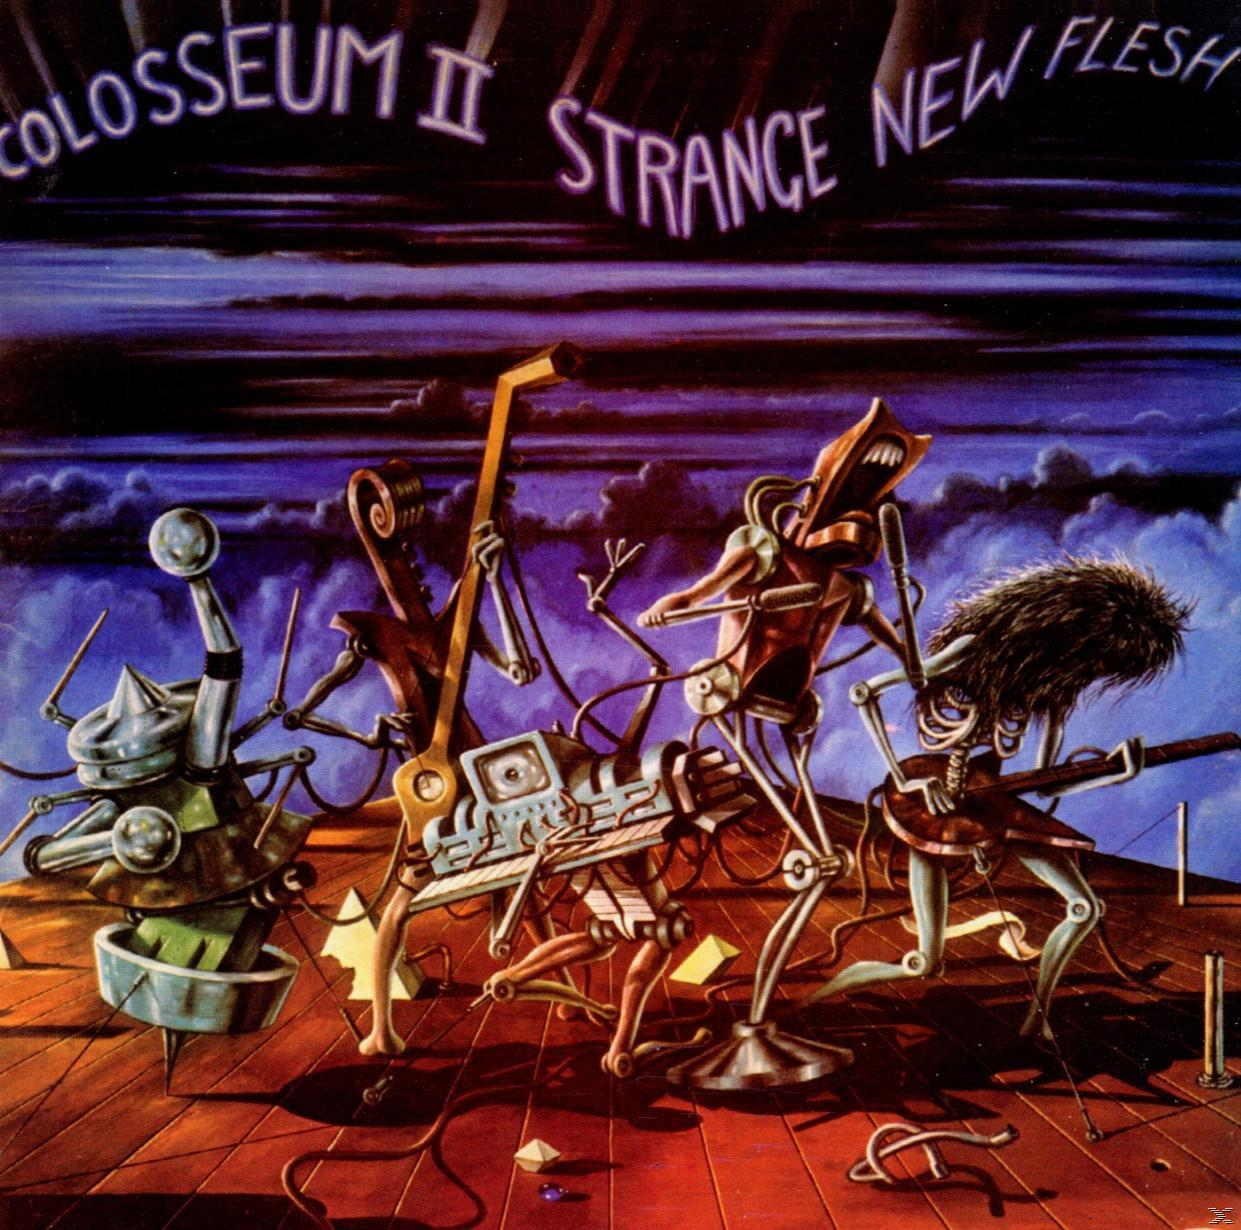 Remastered+Expanded Colosseum (CD) / - - Flesh Ii New Strange